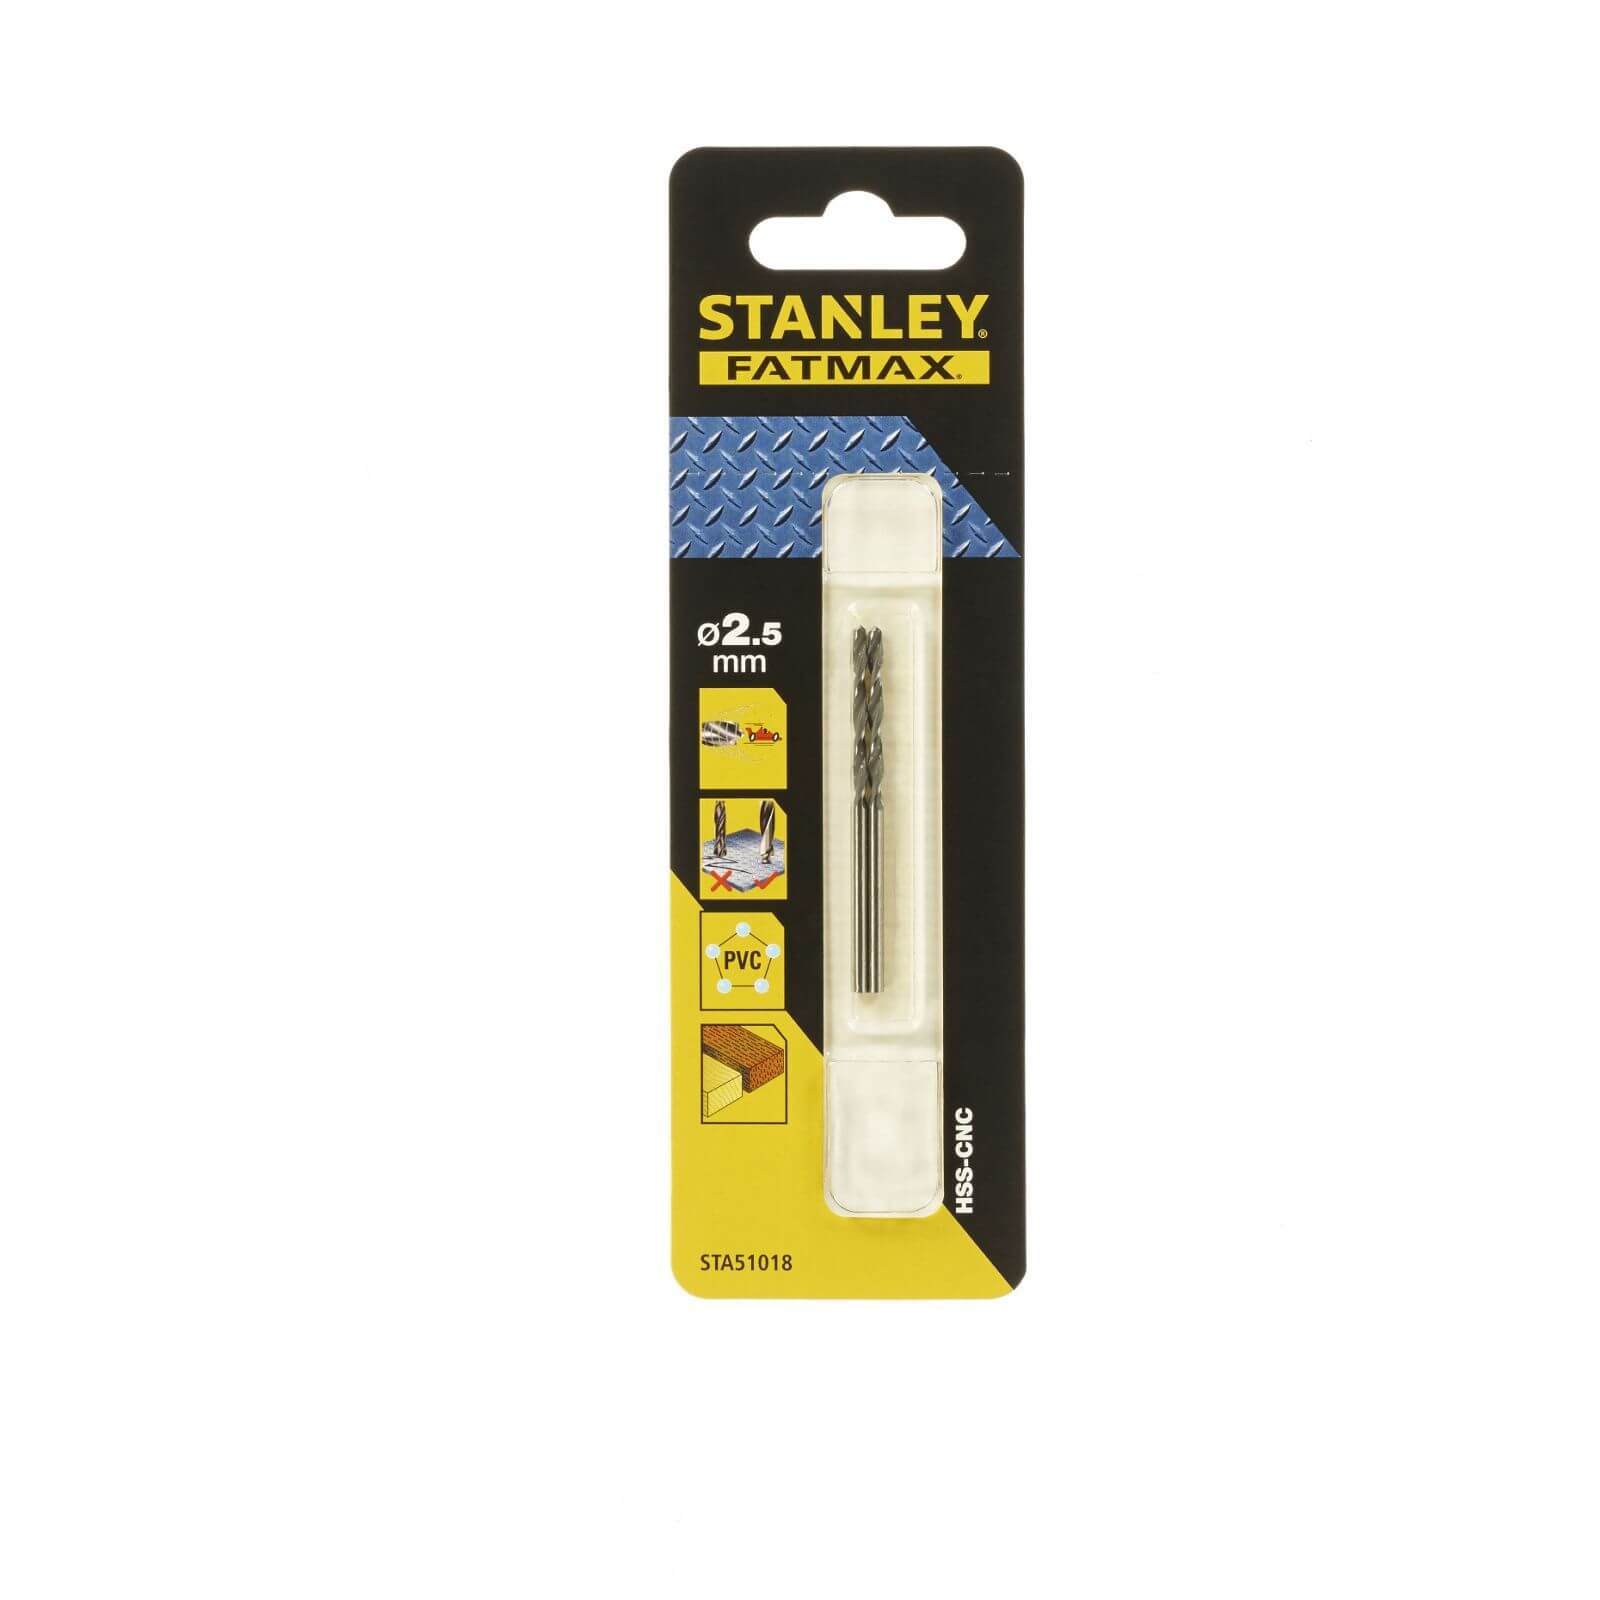 Photo of Stanley Fatmax Bullet Metal Drill Bit 2.5mm - Sta51018-qz